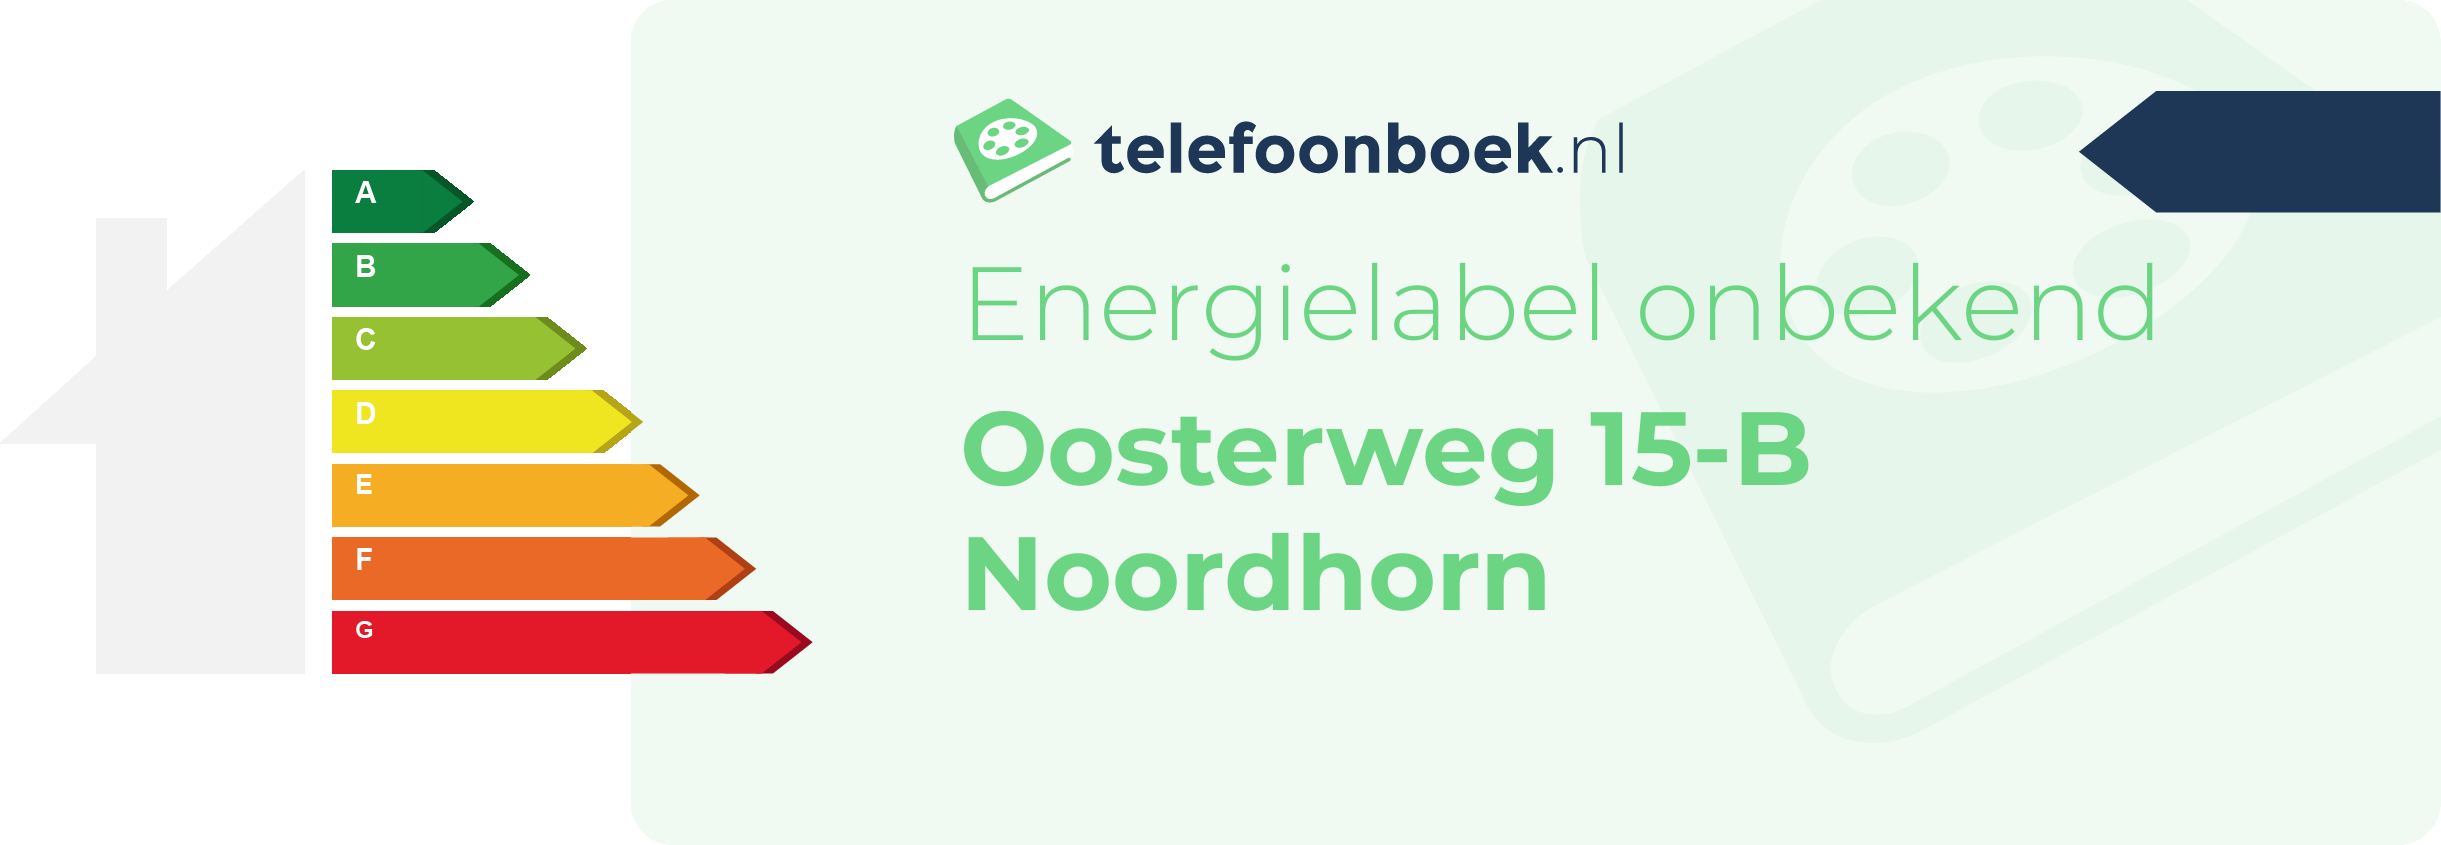 Energielabel Oosterweg 15-B Noordhorn